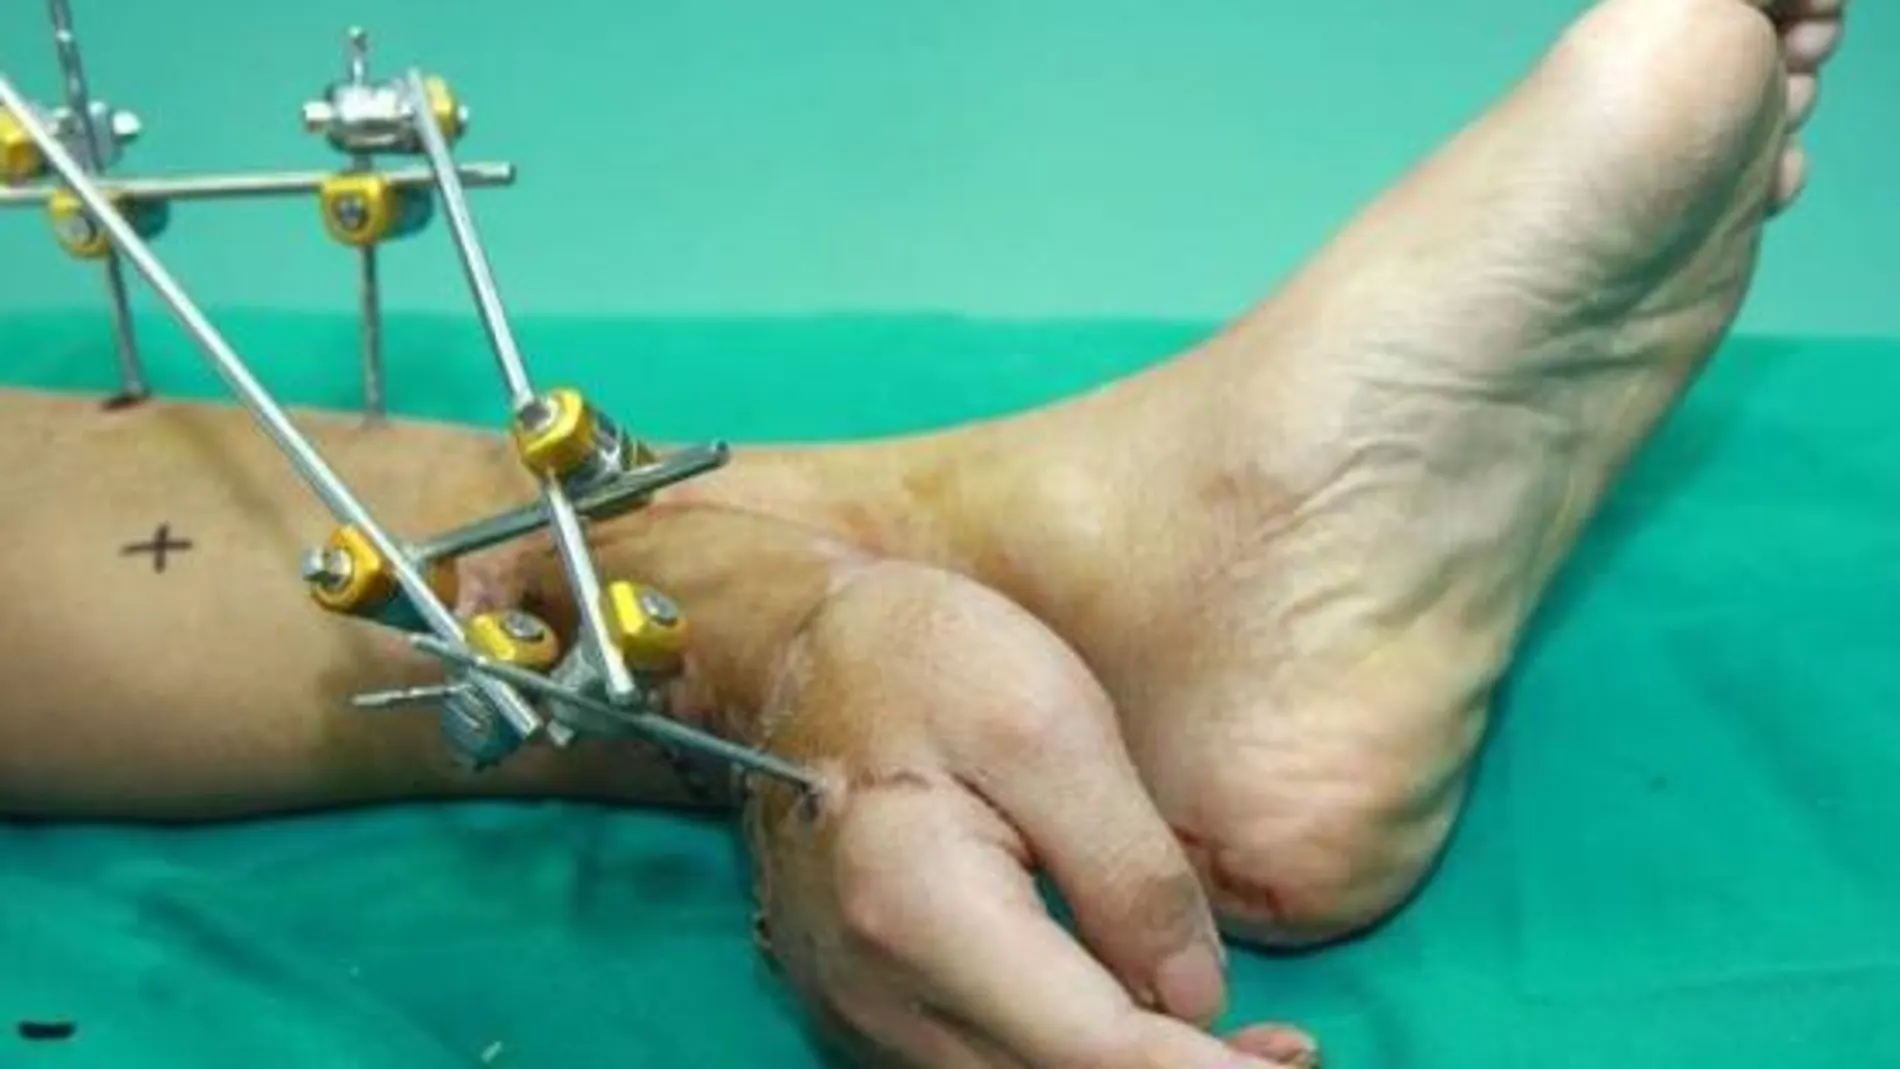 Imagen de la mano unida al tobillo del paciente